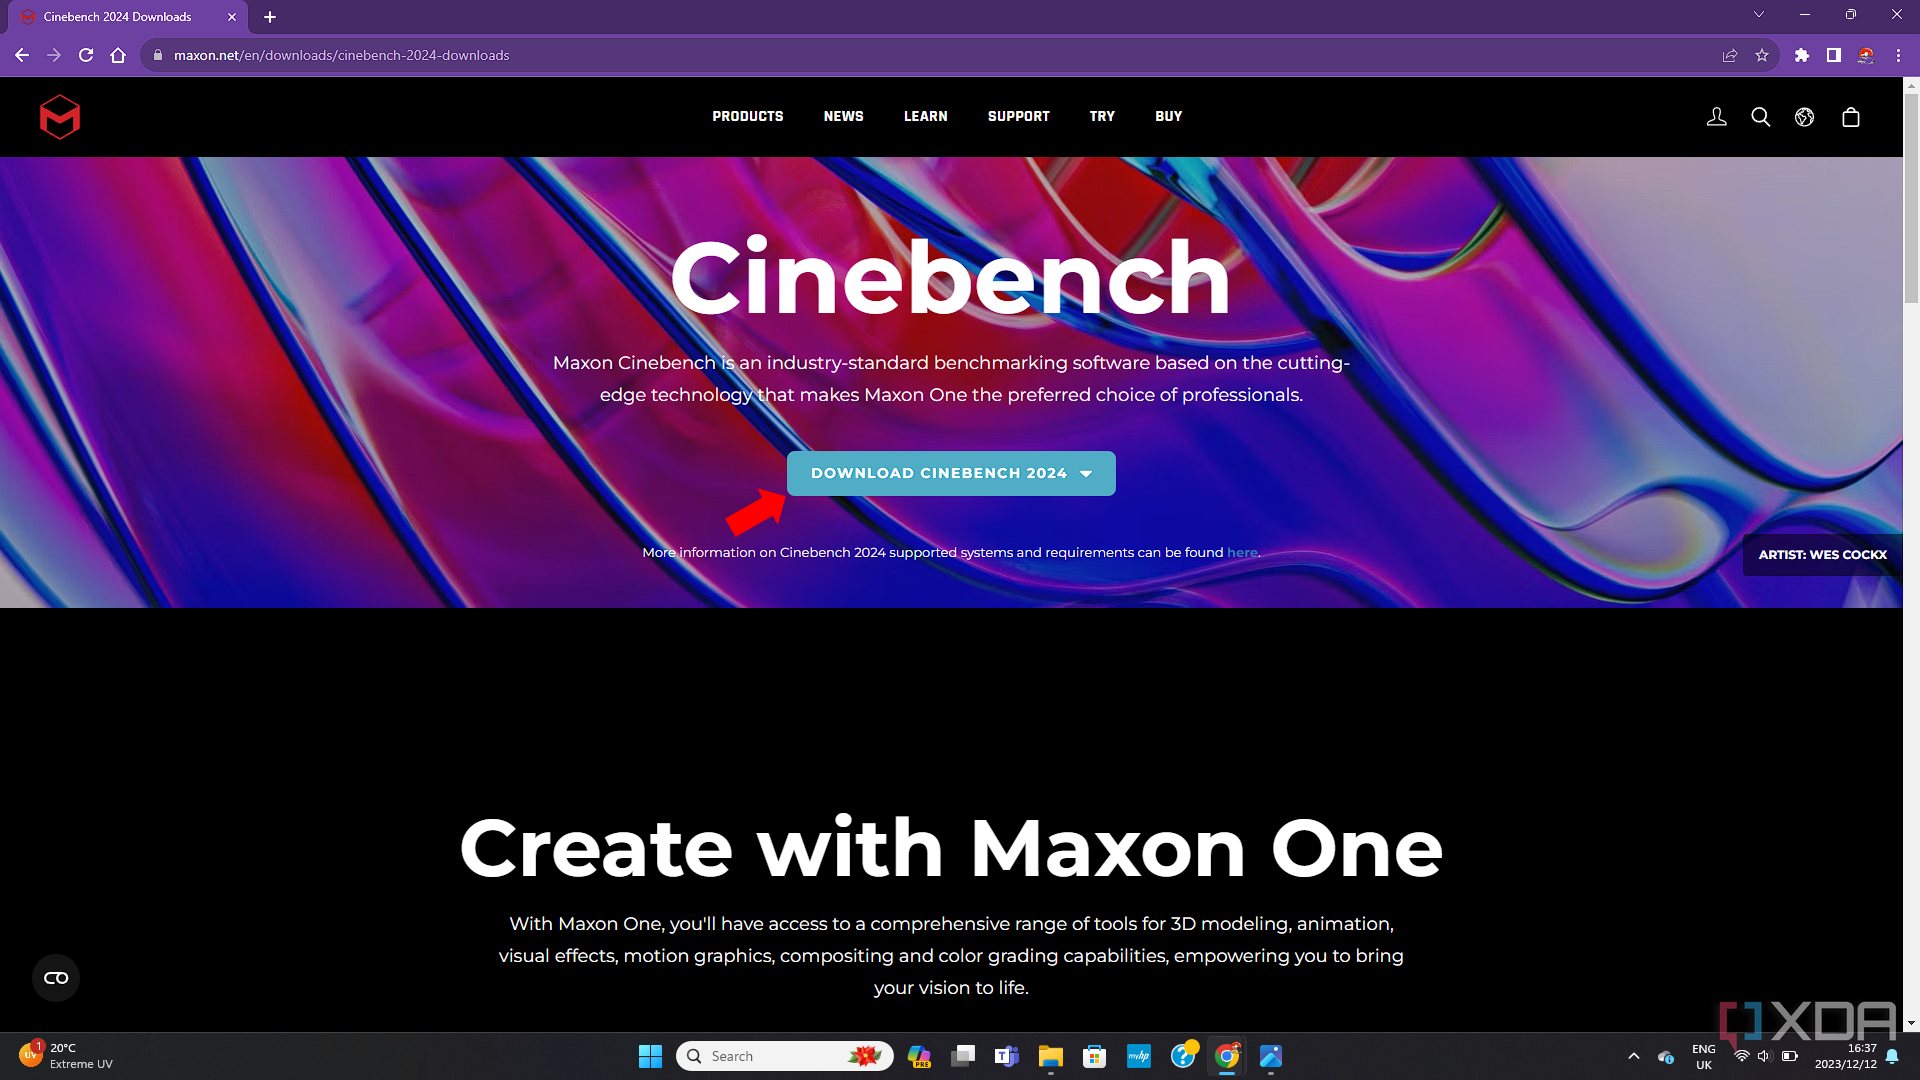 Снимок экрана веб-сайта Cinebench, на котором показана страница загрузки Cinebench 2024 со стрелкой, указывающей на кнопку загрузки.